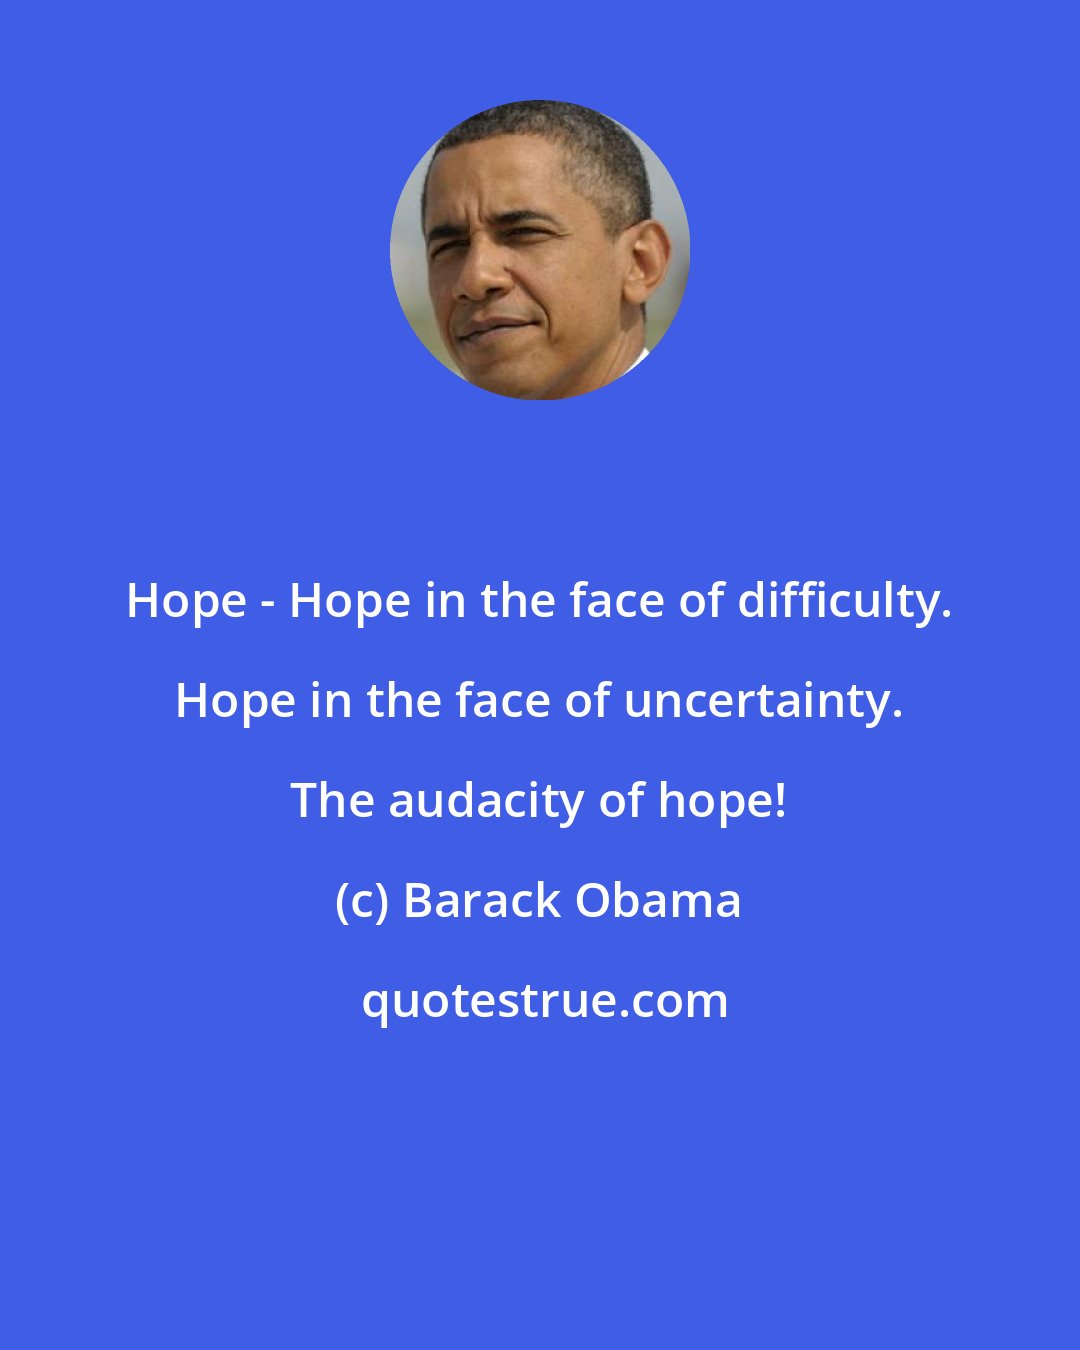 Barack Obama: Hope - Hope in the face of difficulty. Hope in the face of uncertainty. The audacity of hope!